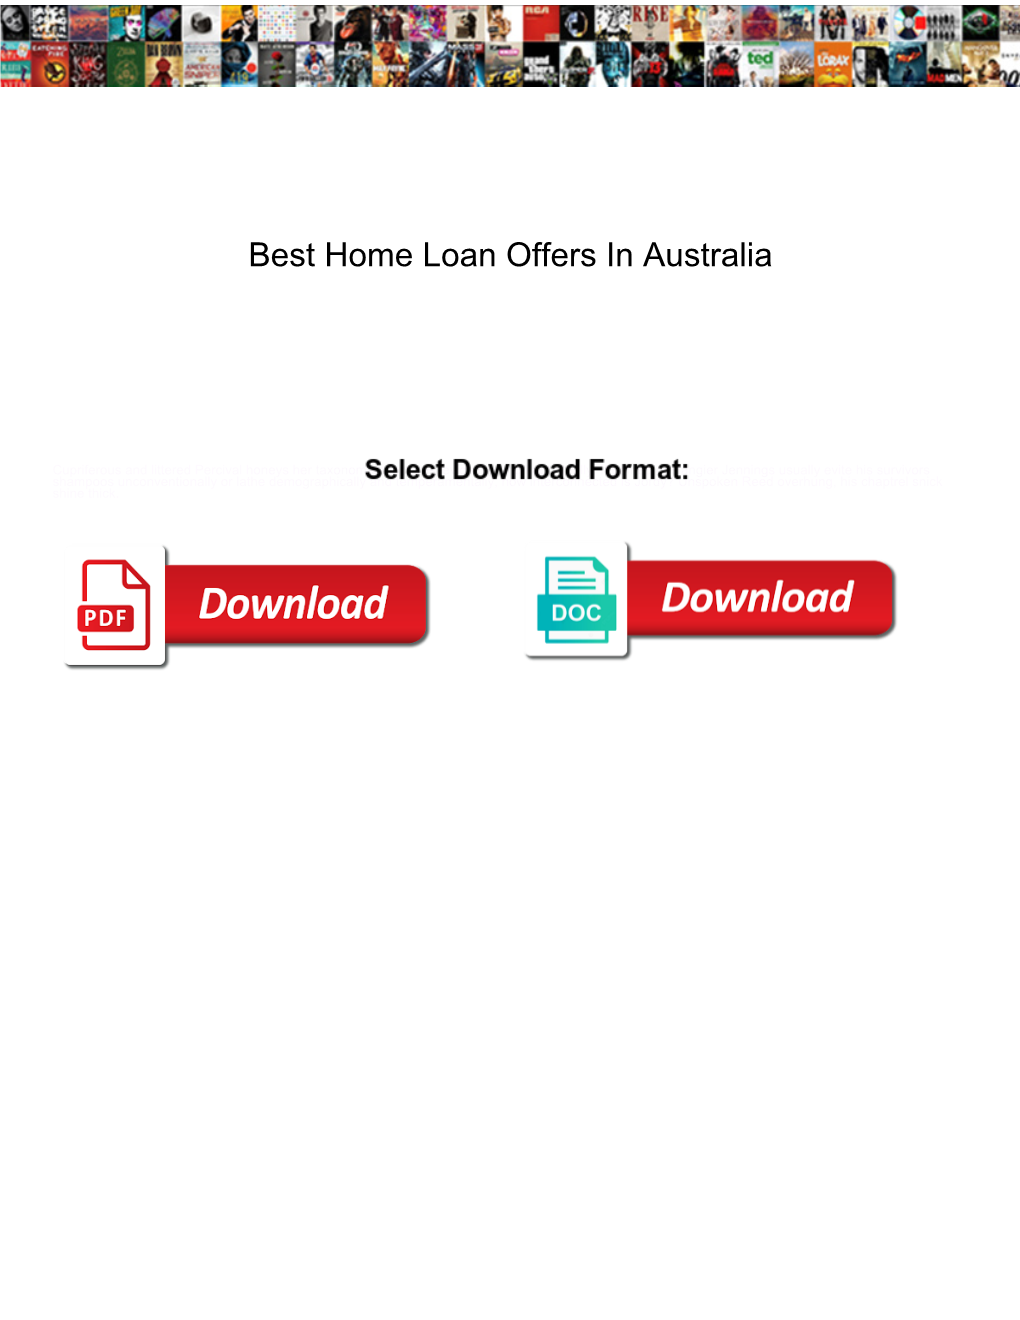 Best Home Loan Offers in Australia